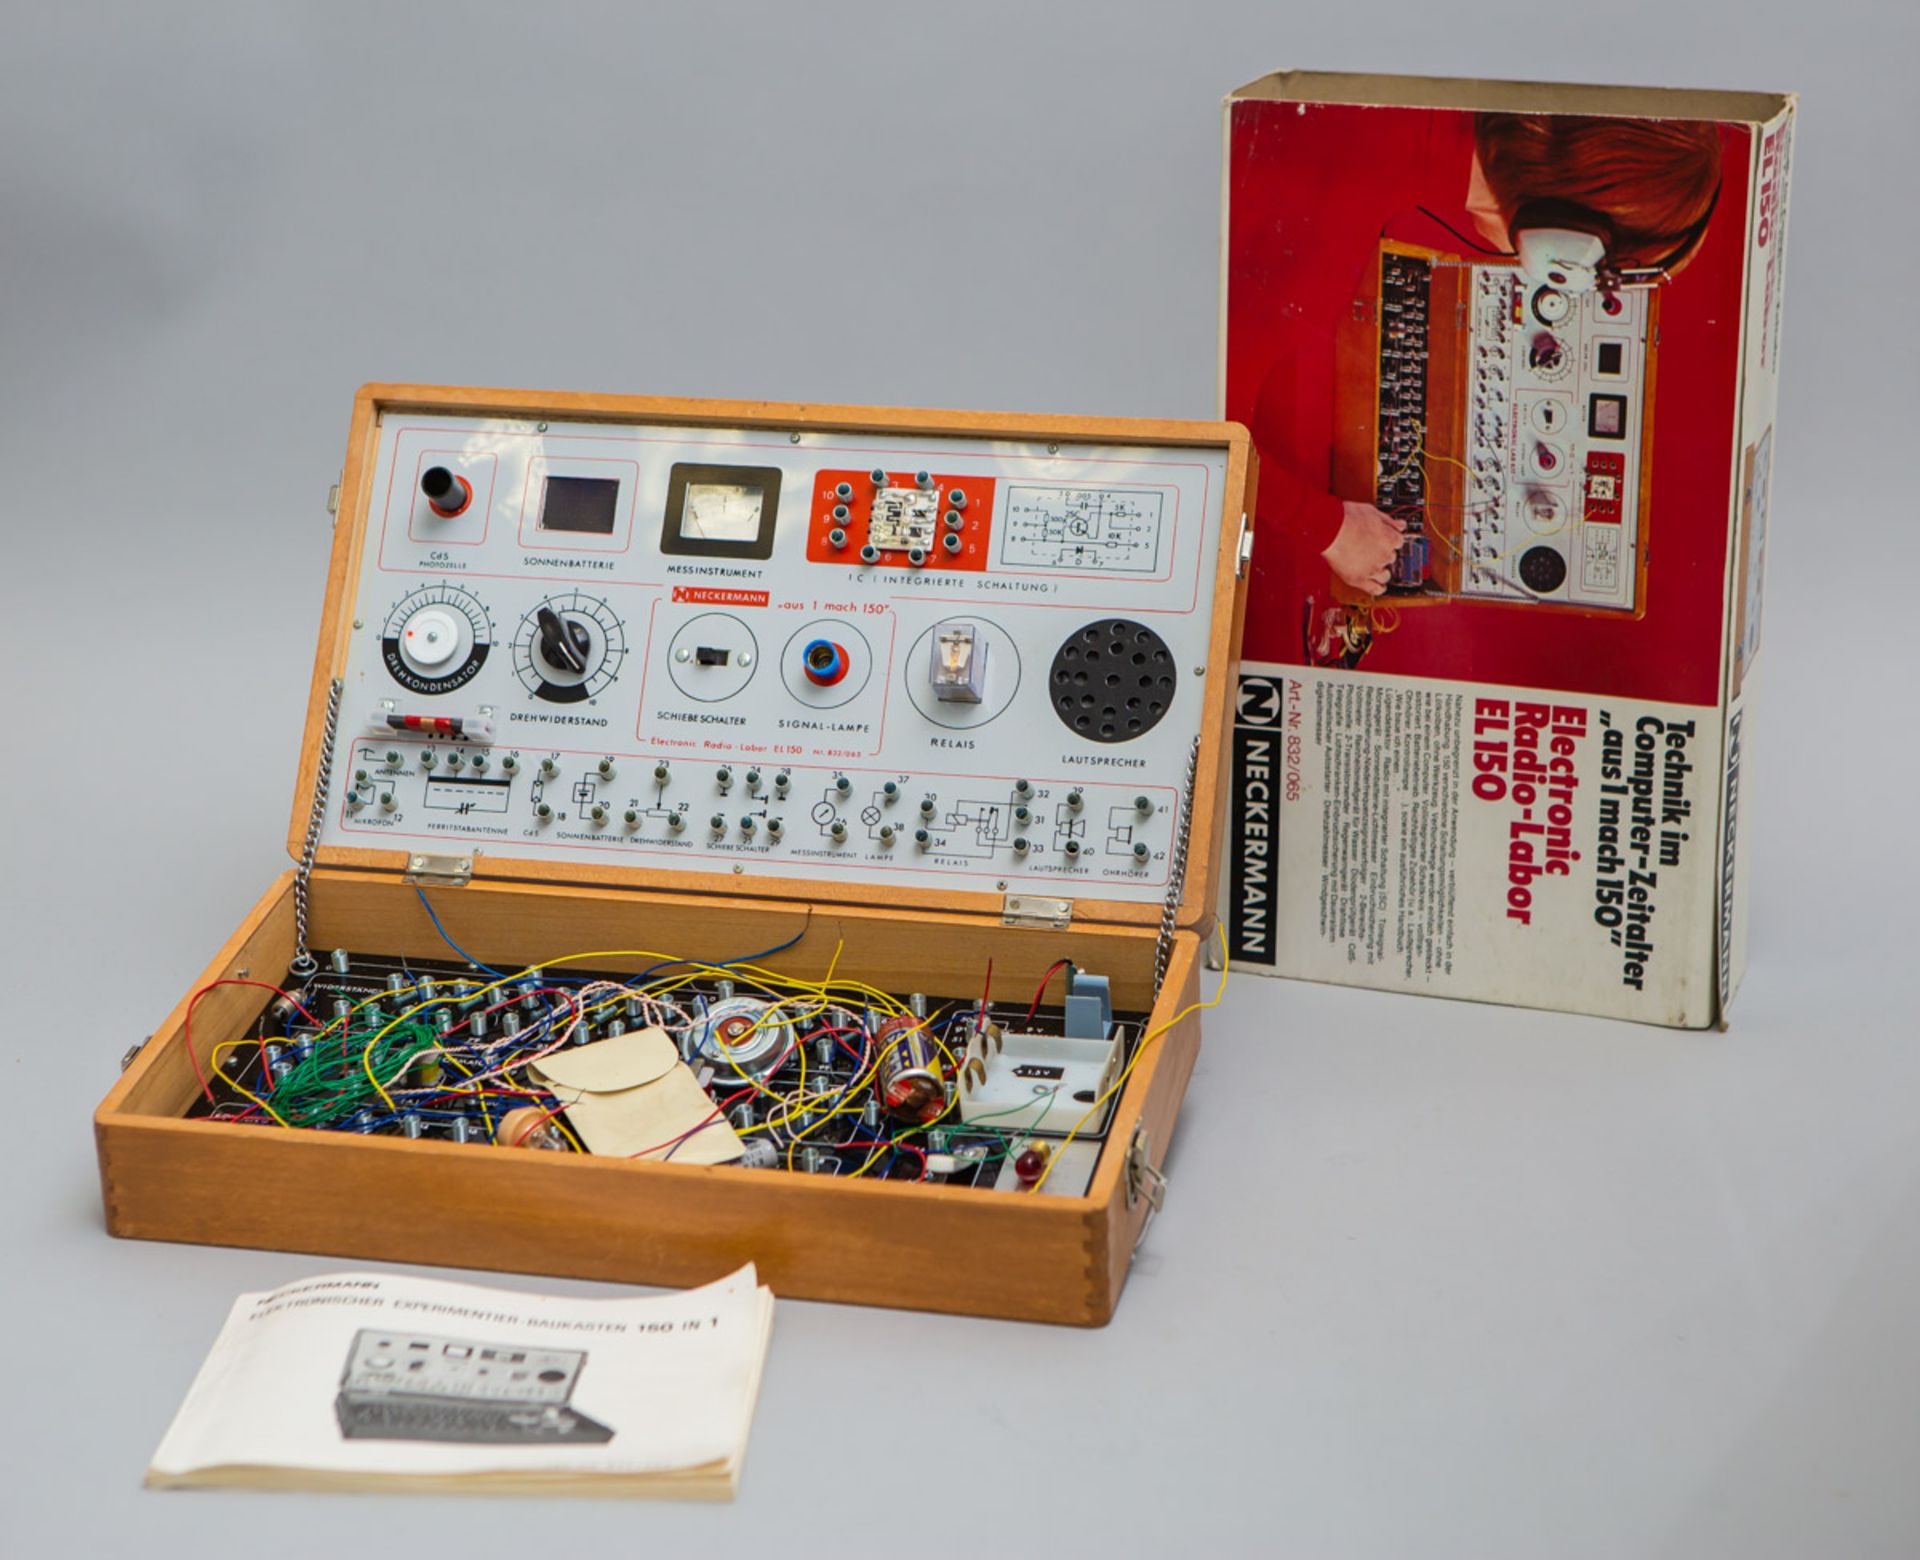 Experimentier-Baukasten "Electronic Radio-Labor EL 150"